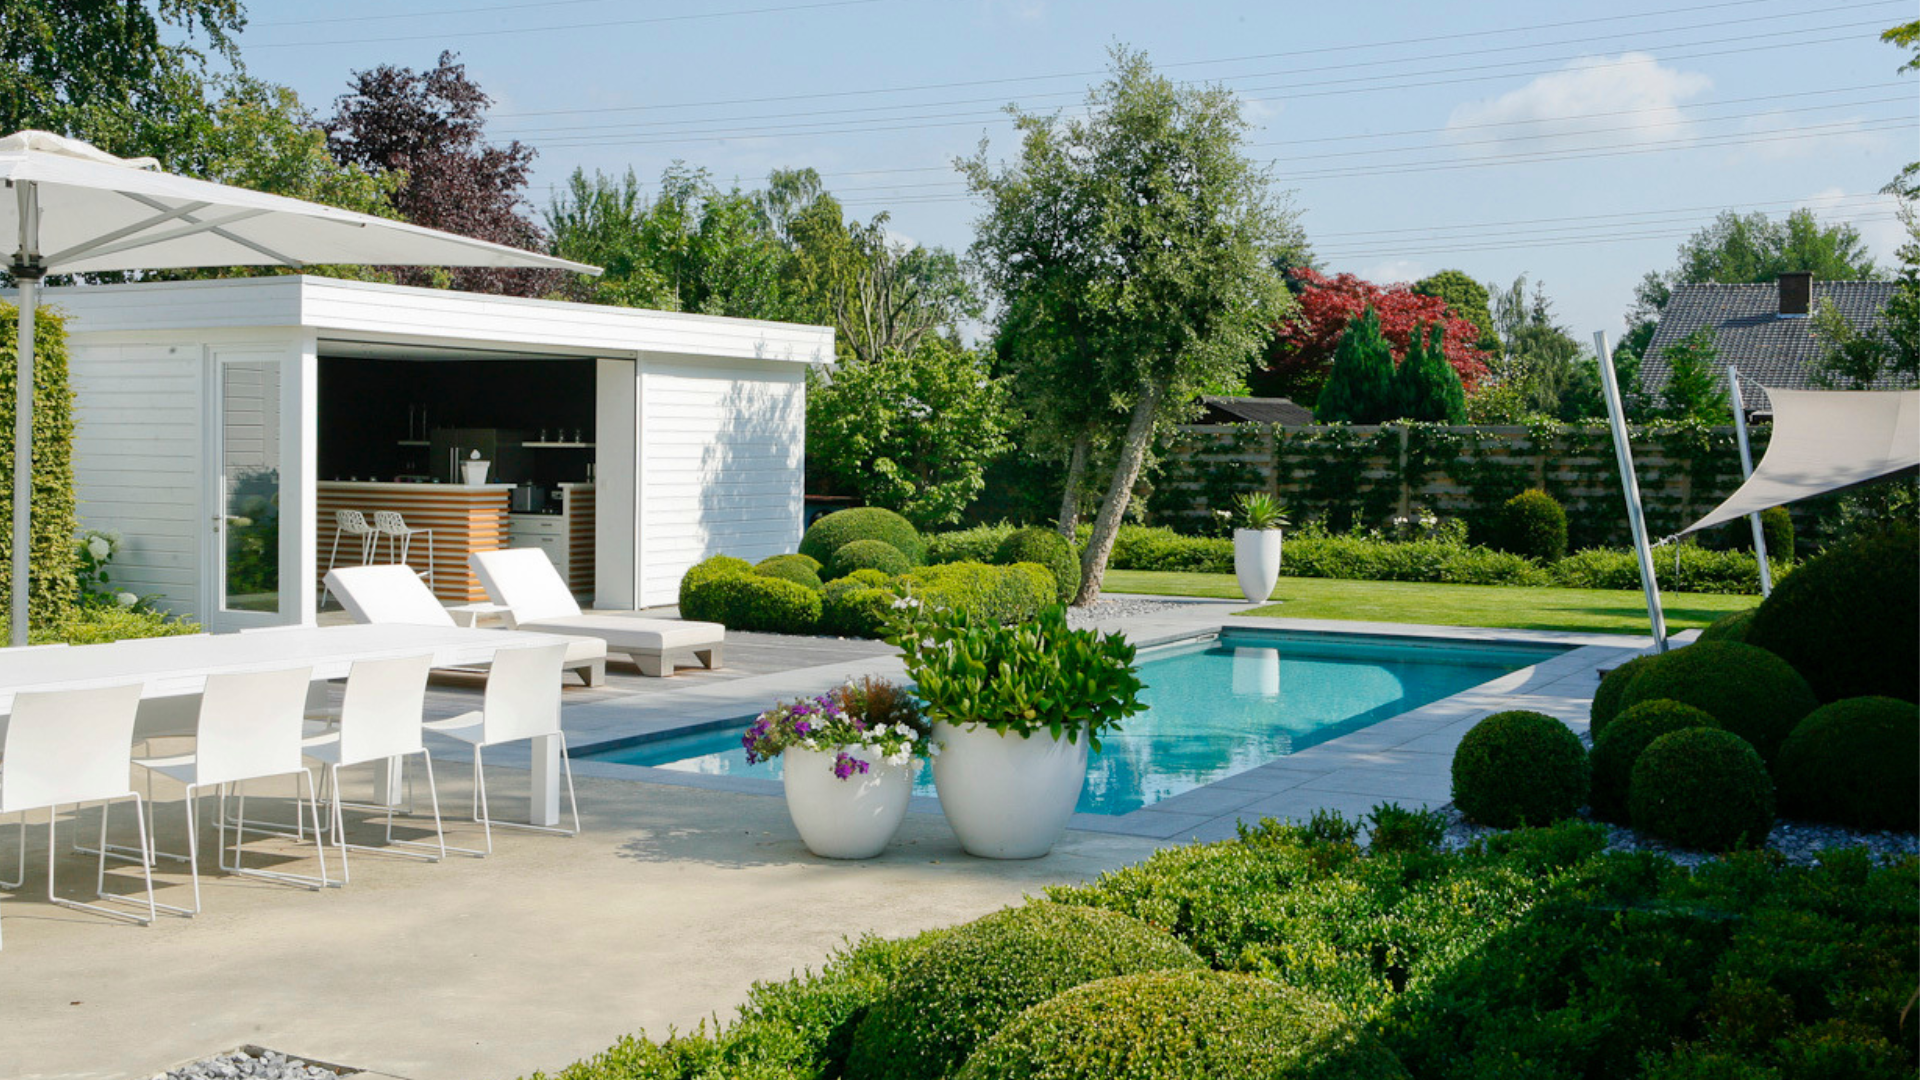 Moderne tuin met zwembad, poolhouse en tuinmeubels